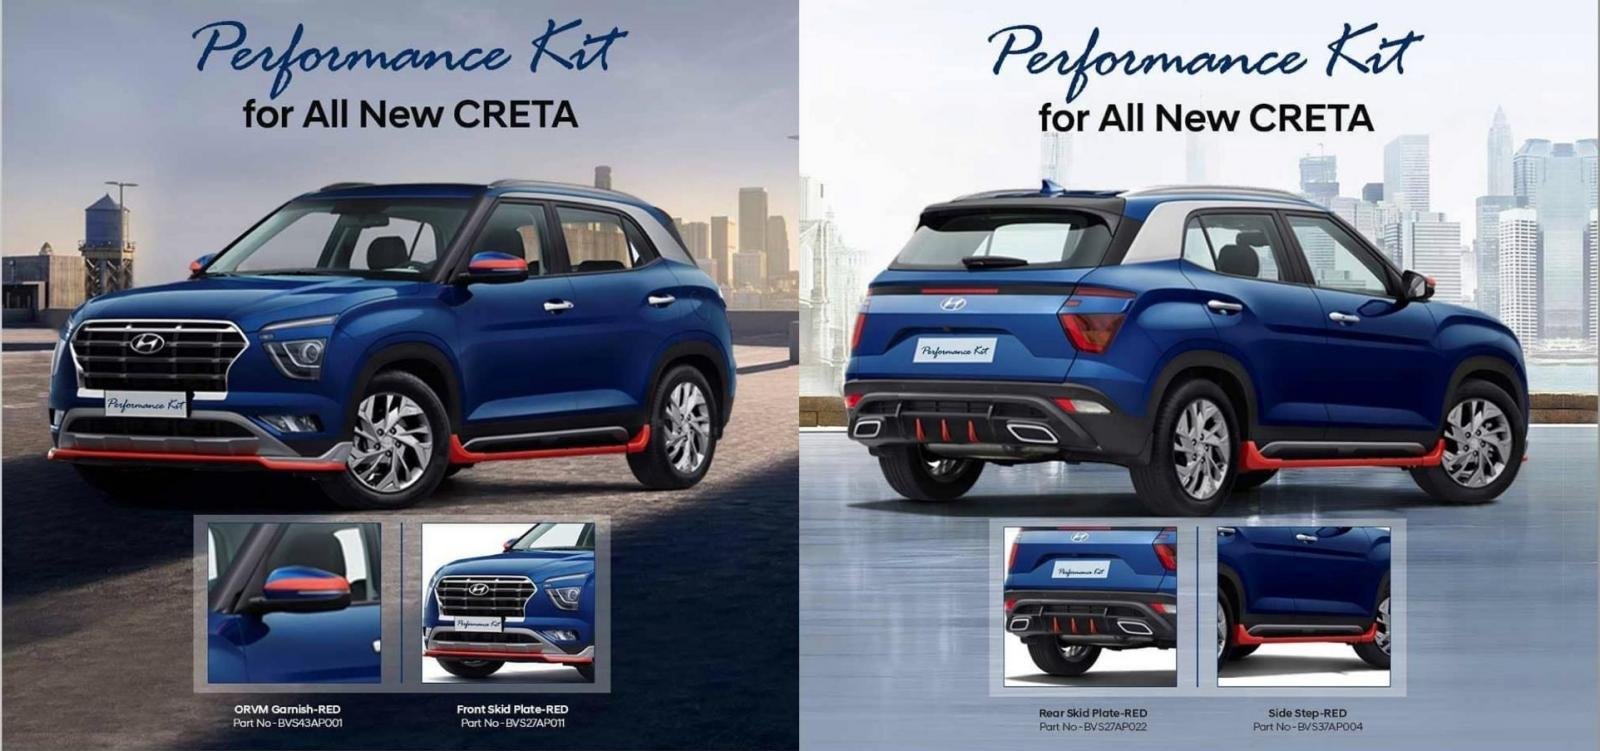 Hyundai Creta 2020 Performance Kit